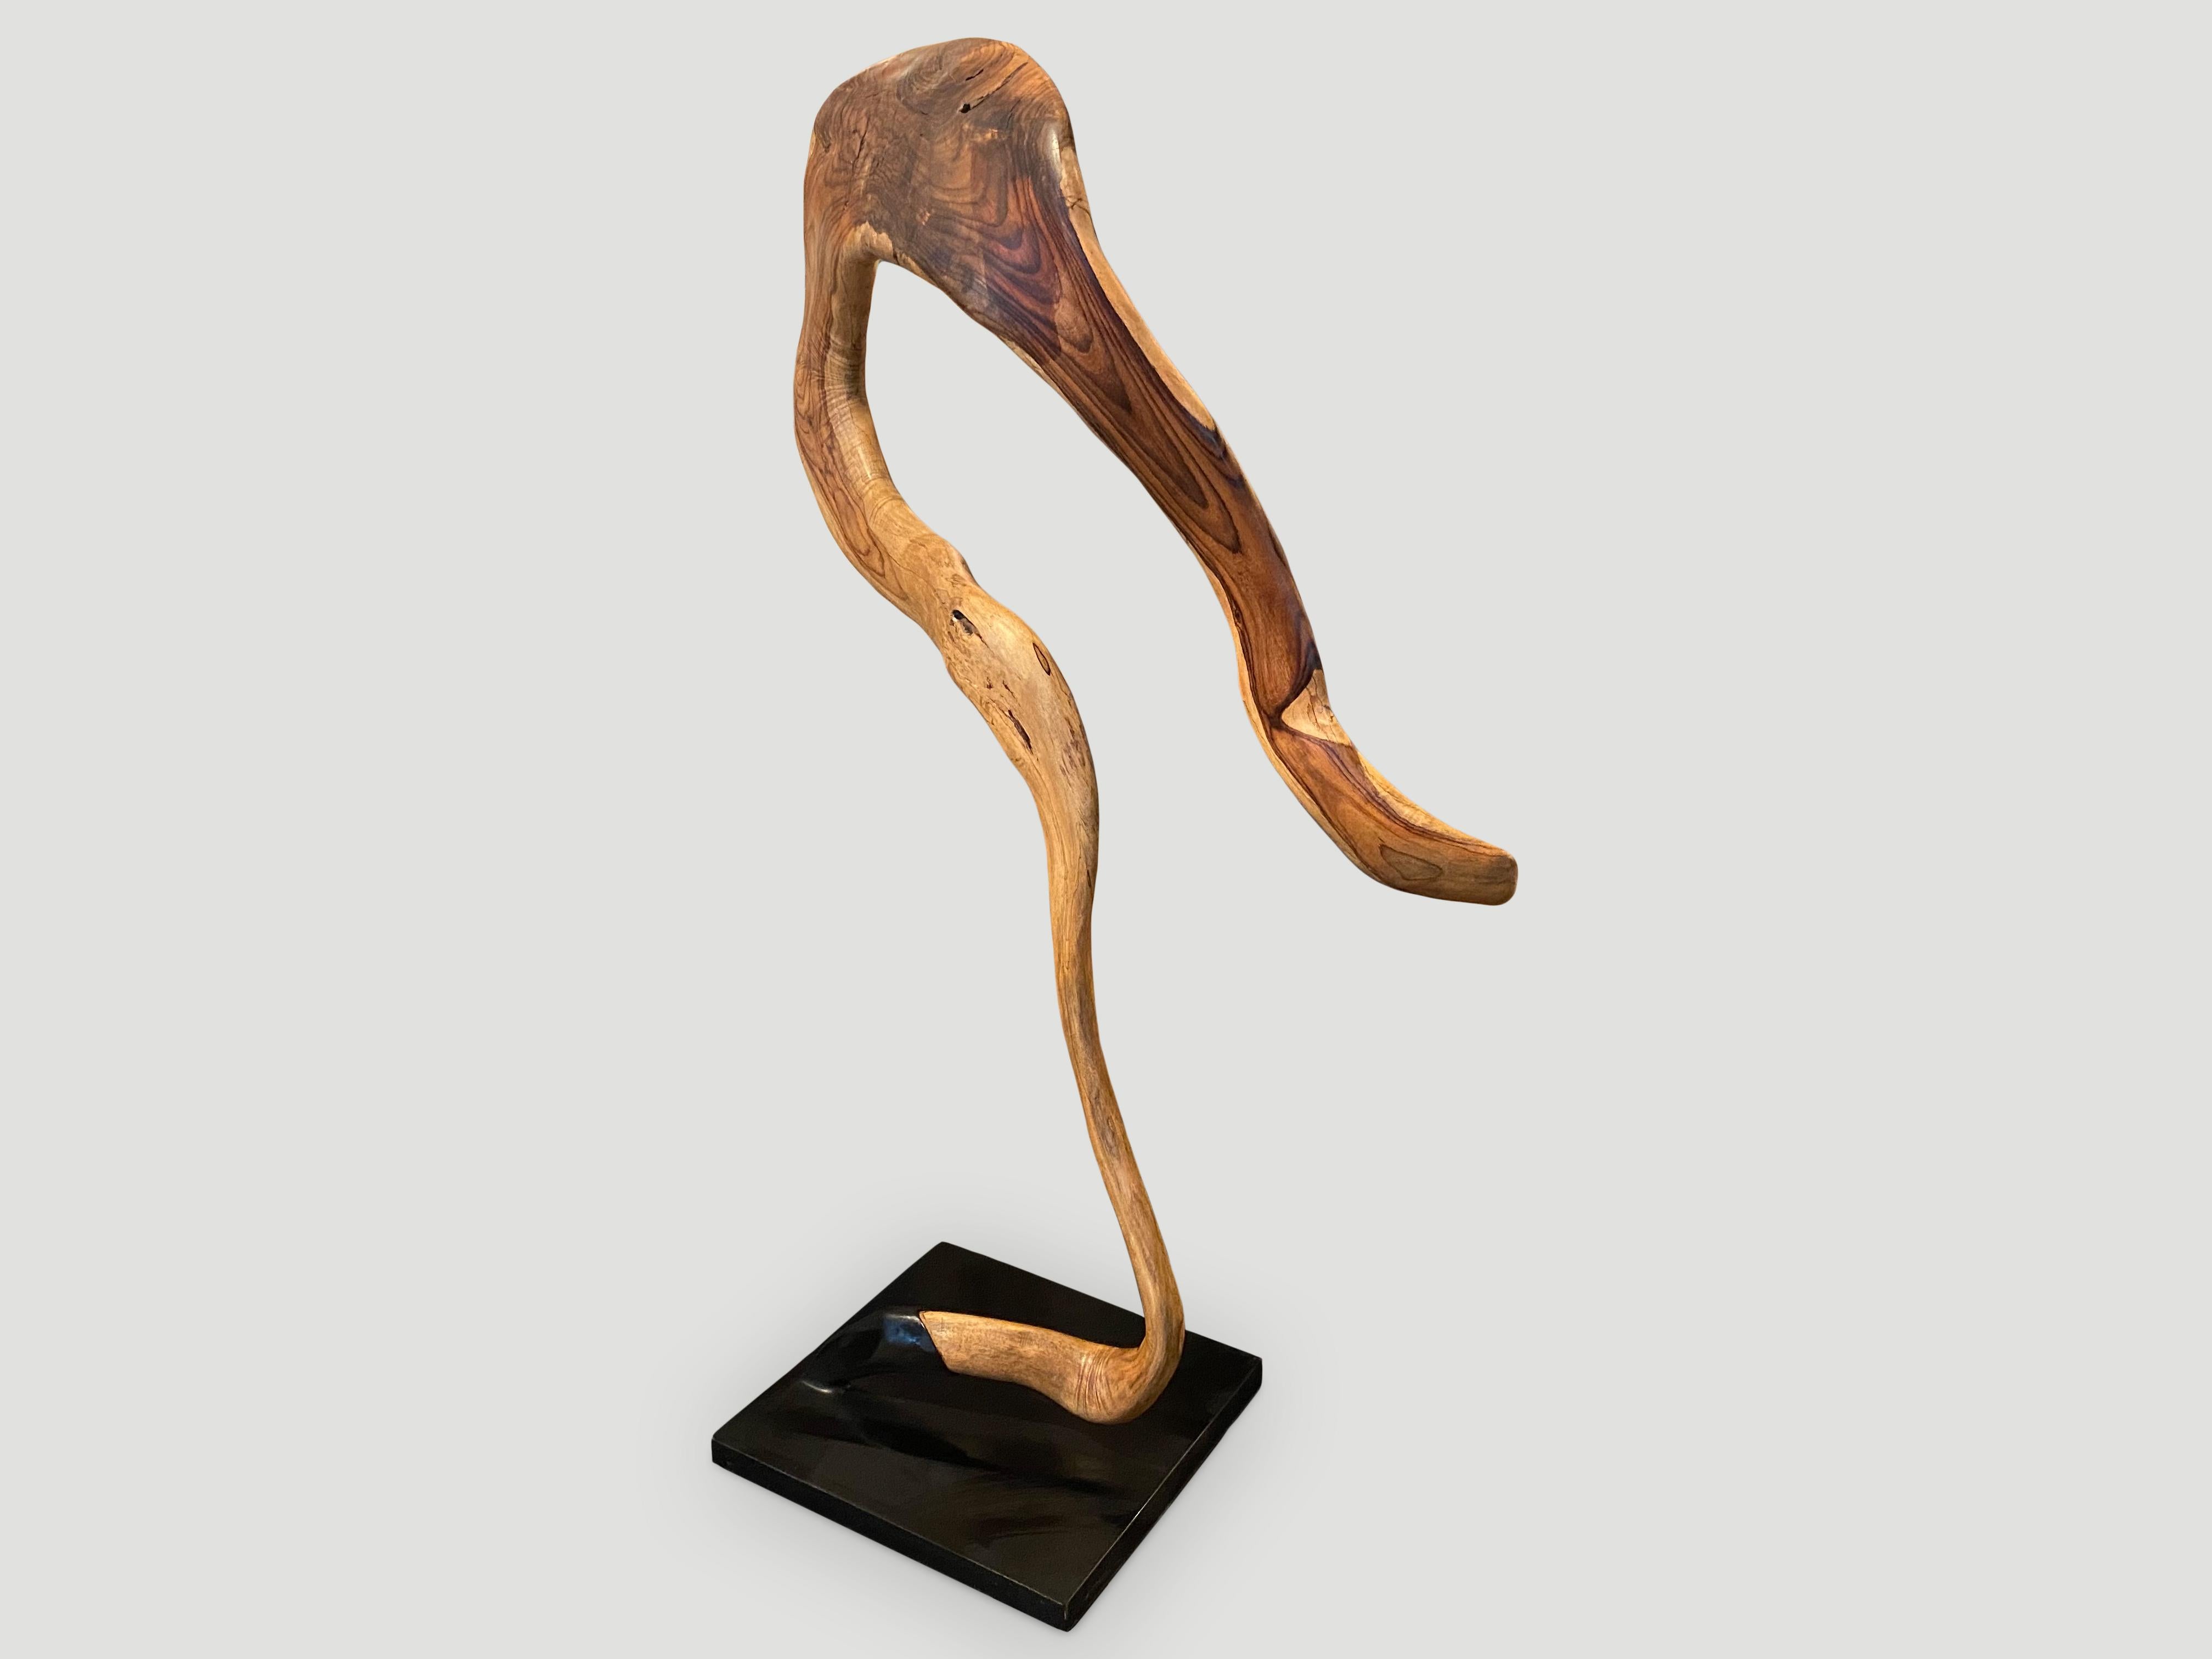 Wunderschön geschnitzte Skulptur aus einem Stück wiedergewonnenem Sono-Holz, die einem Fragezeichen ähnelt. Mit einem natürlichen Öl behandelt, das die schöne Maserung des Holzes zum Vorschein bringt. Auf einem modernen schwarzen Stahlsockel von 16